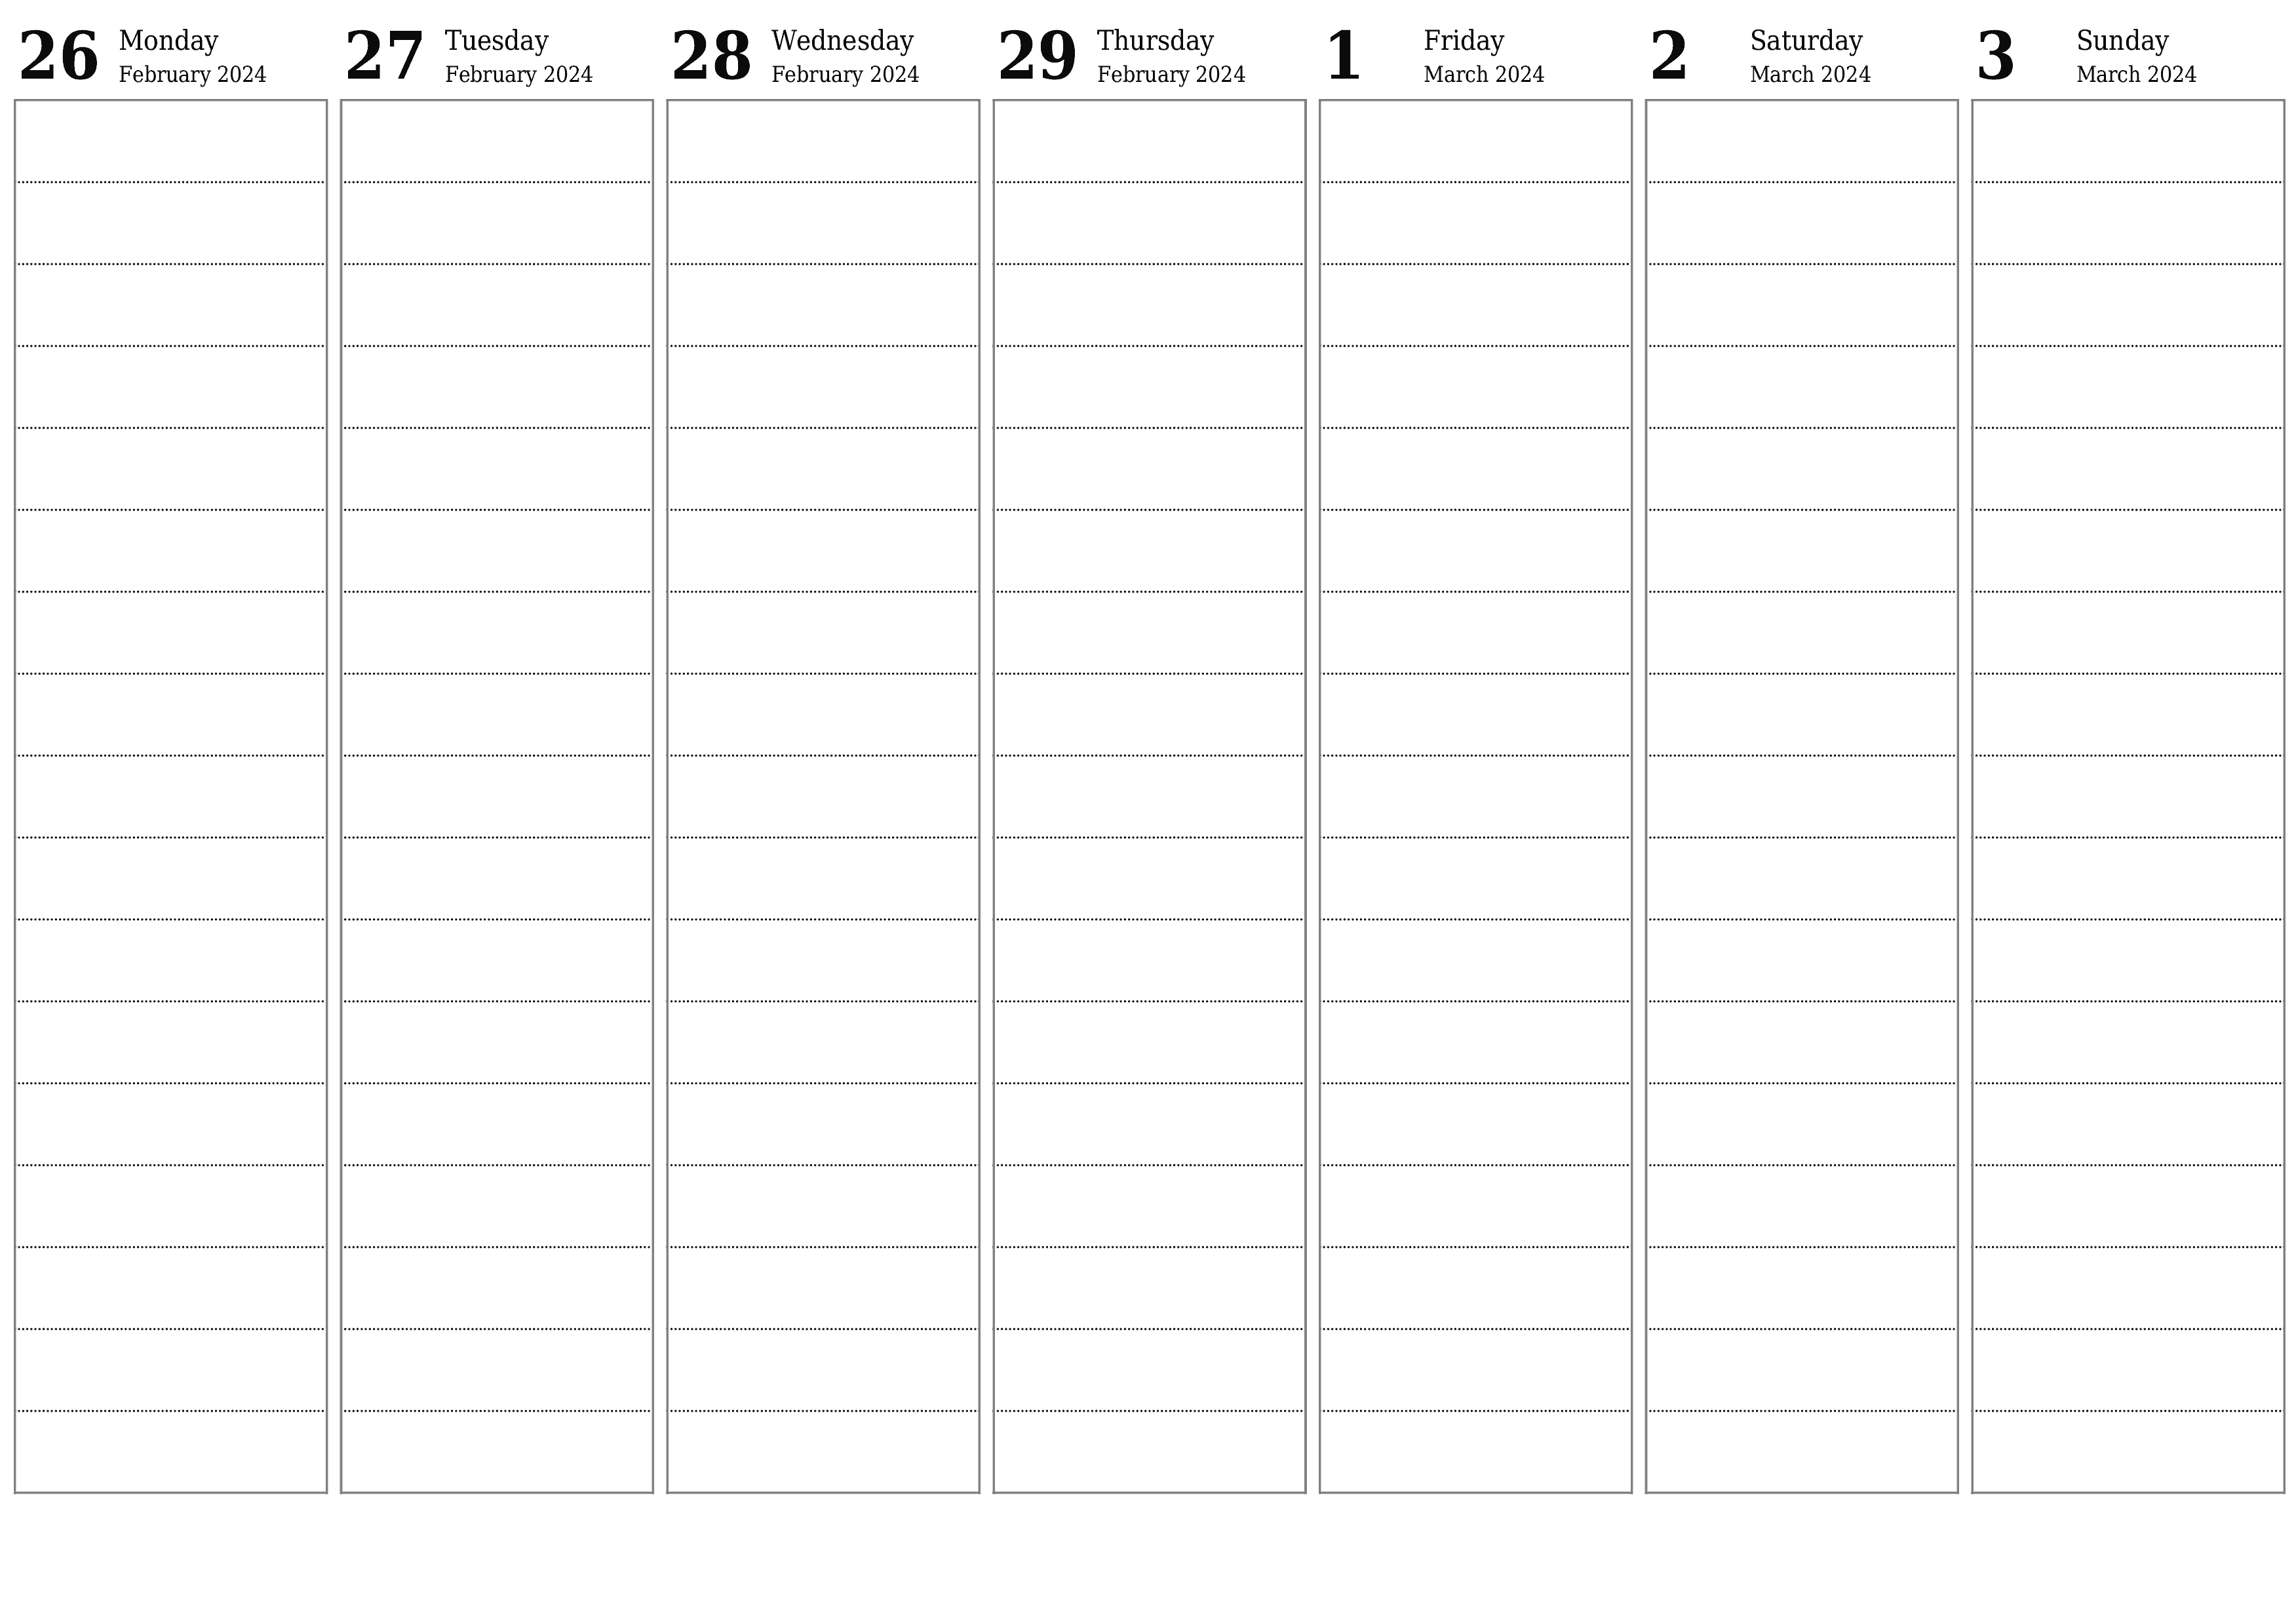 Blank calendar March 2024